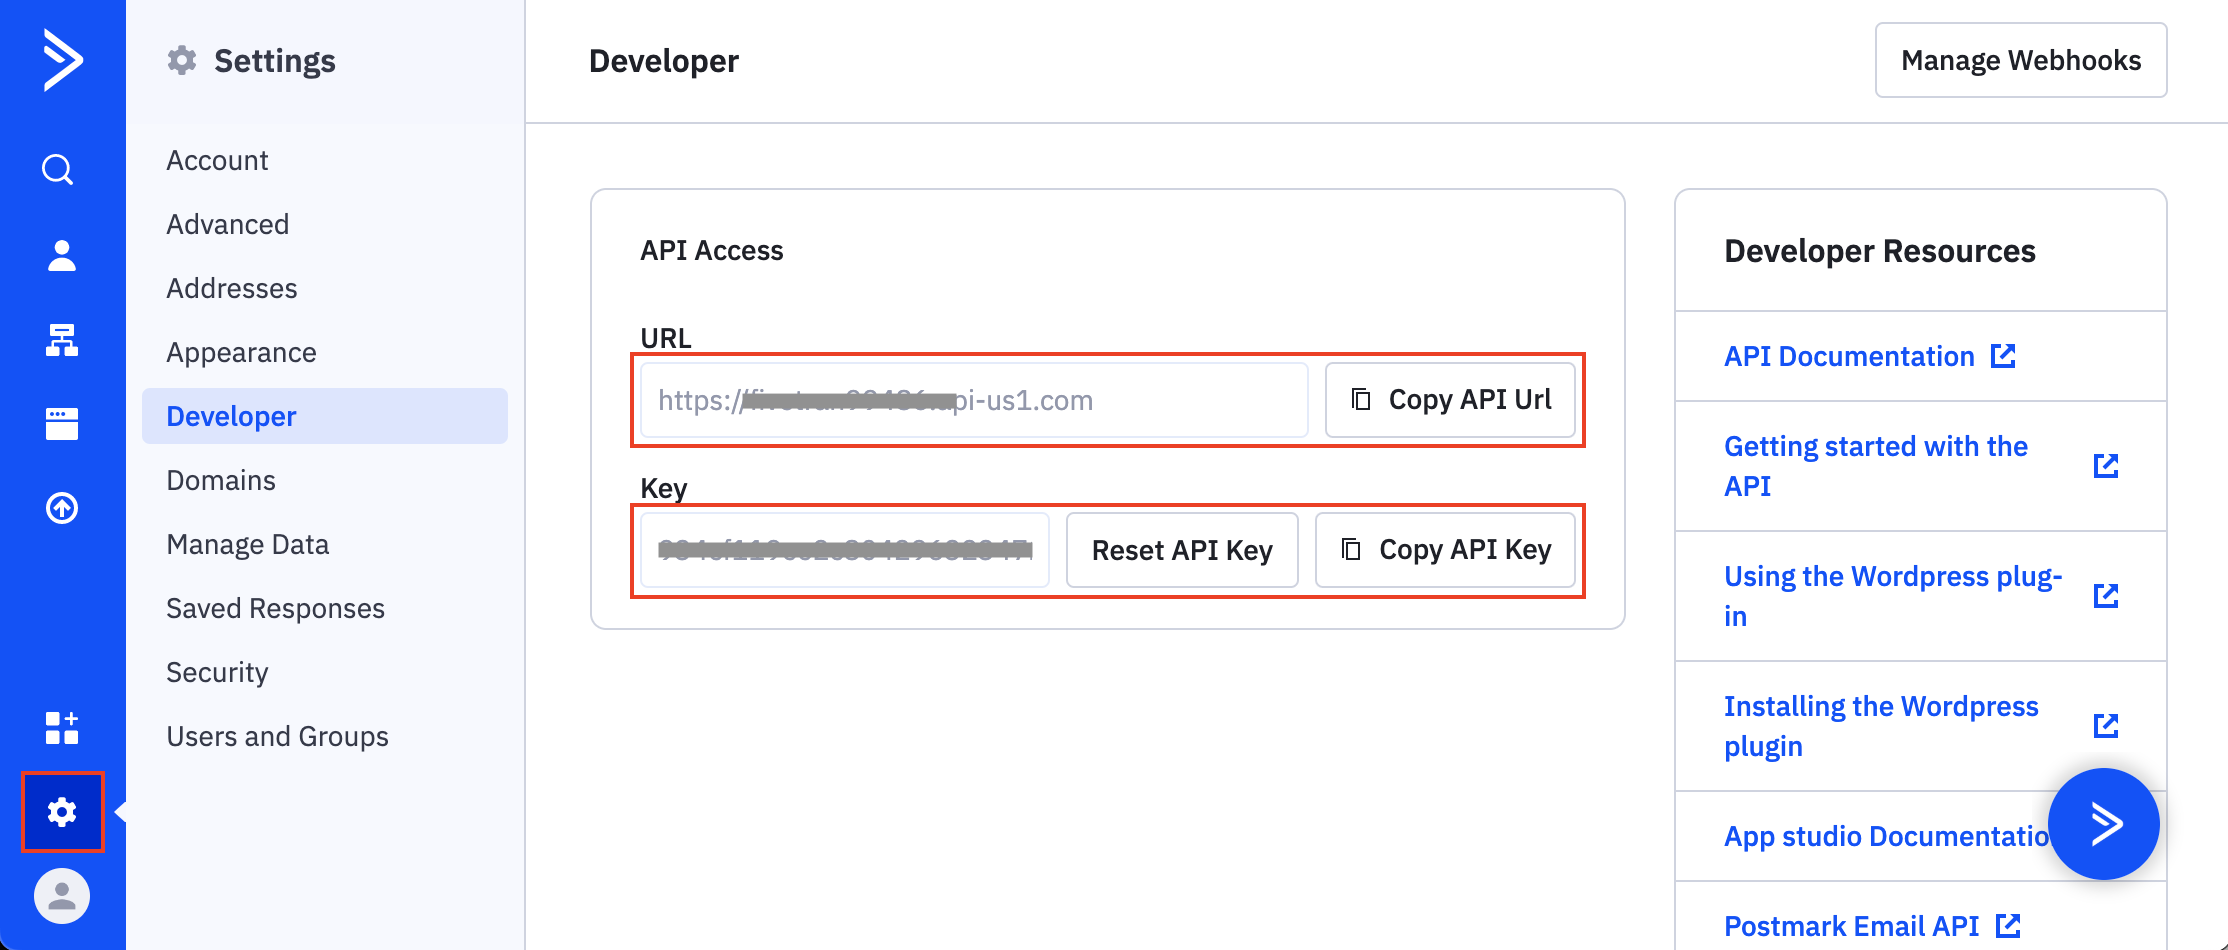 Copy API URL and API Key